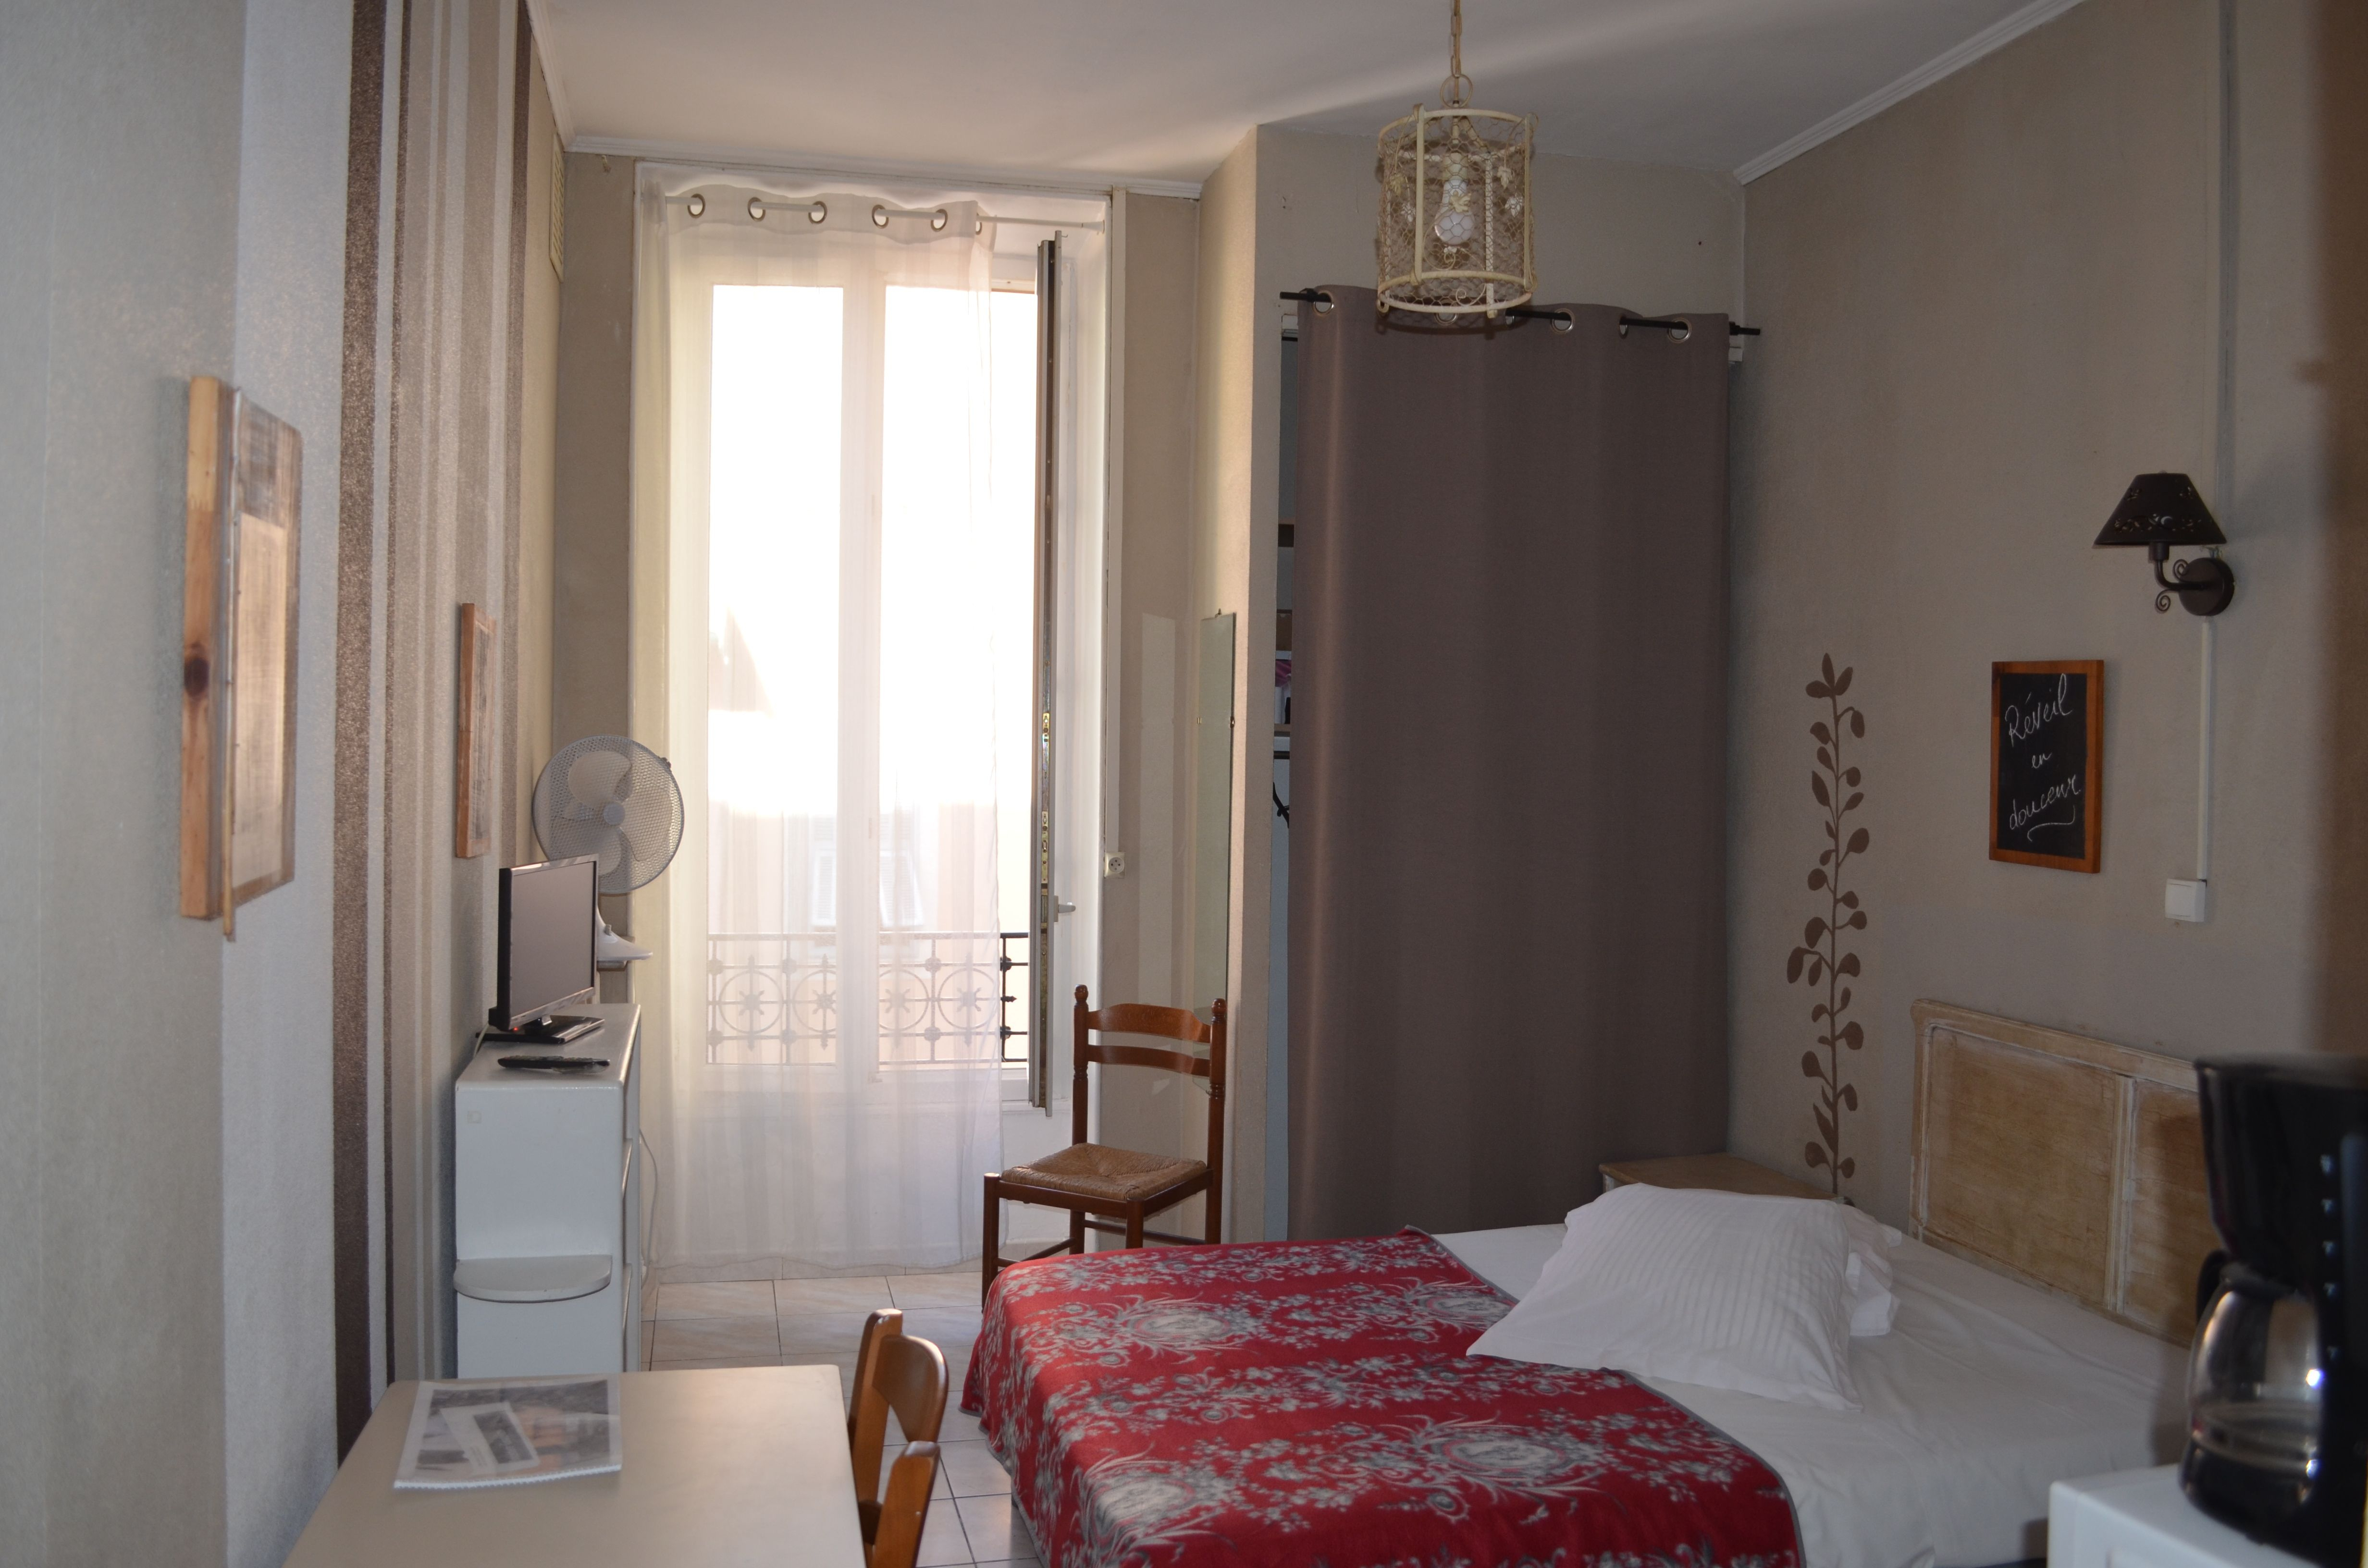 Hôtel Meublé &quot;résidence Fricéro&quot; - Hôtels À Louer À Nice serapportantà Hotel Meublé Nice